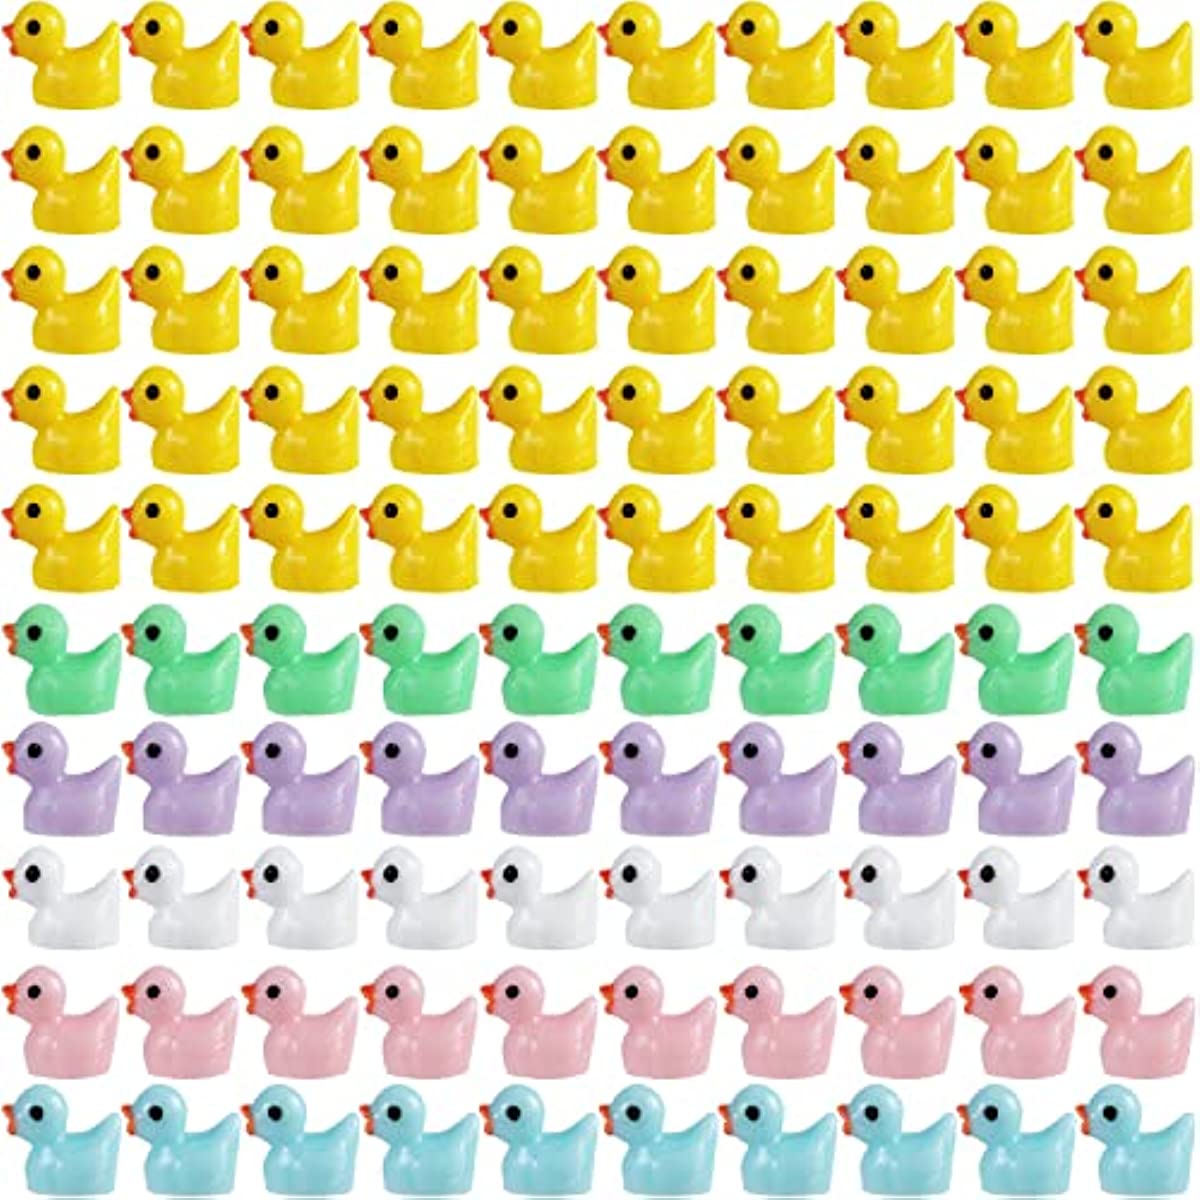 100pcs Mini Resin Ducks in 6 Colors for Crafts, Aquarium, Garden, and DIY